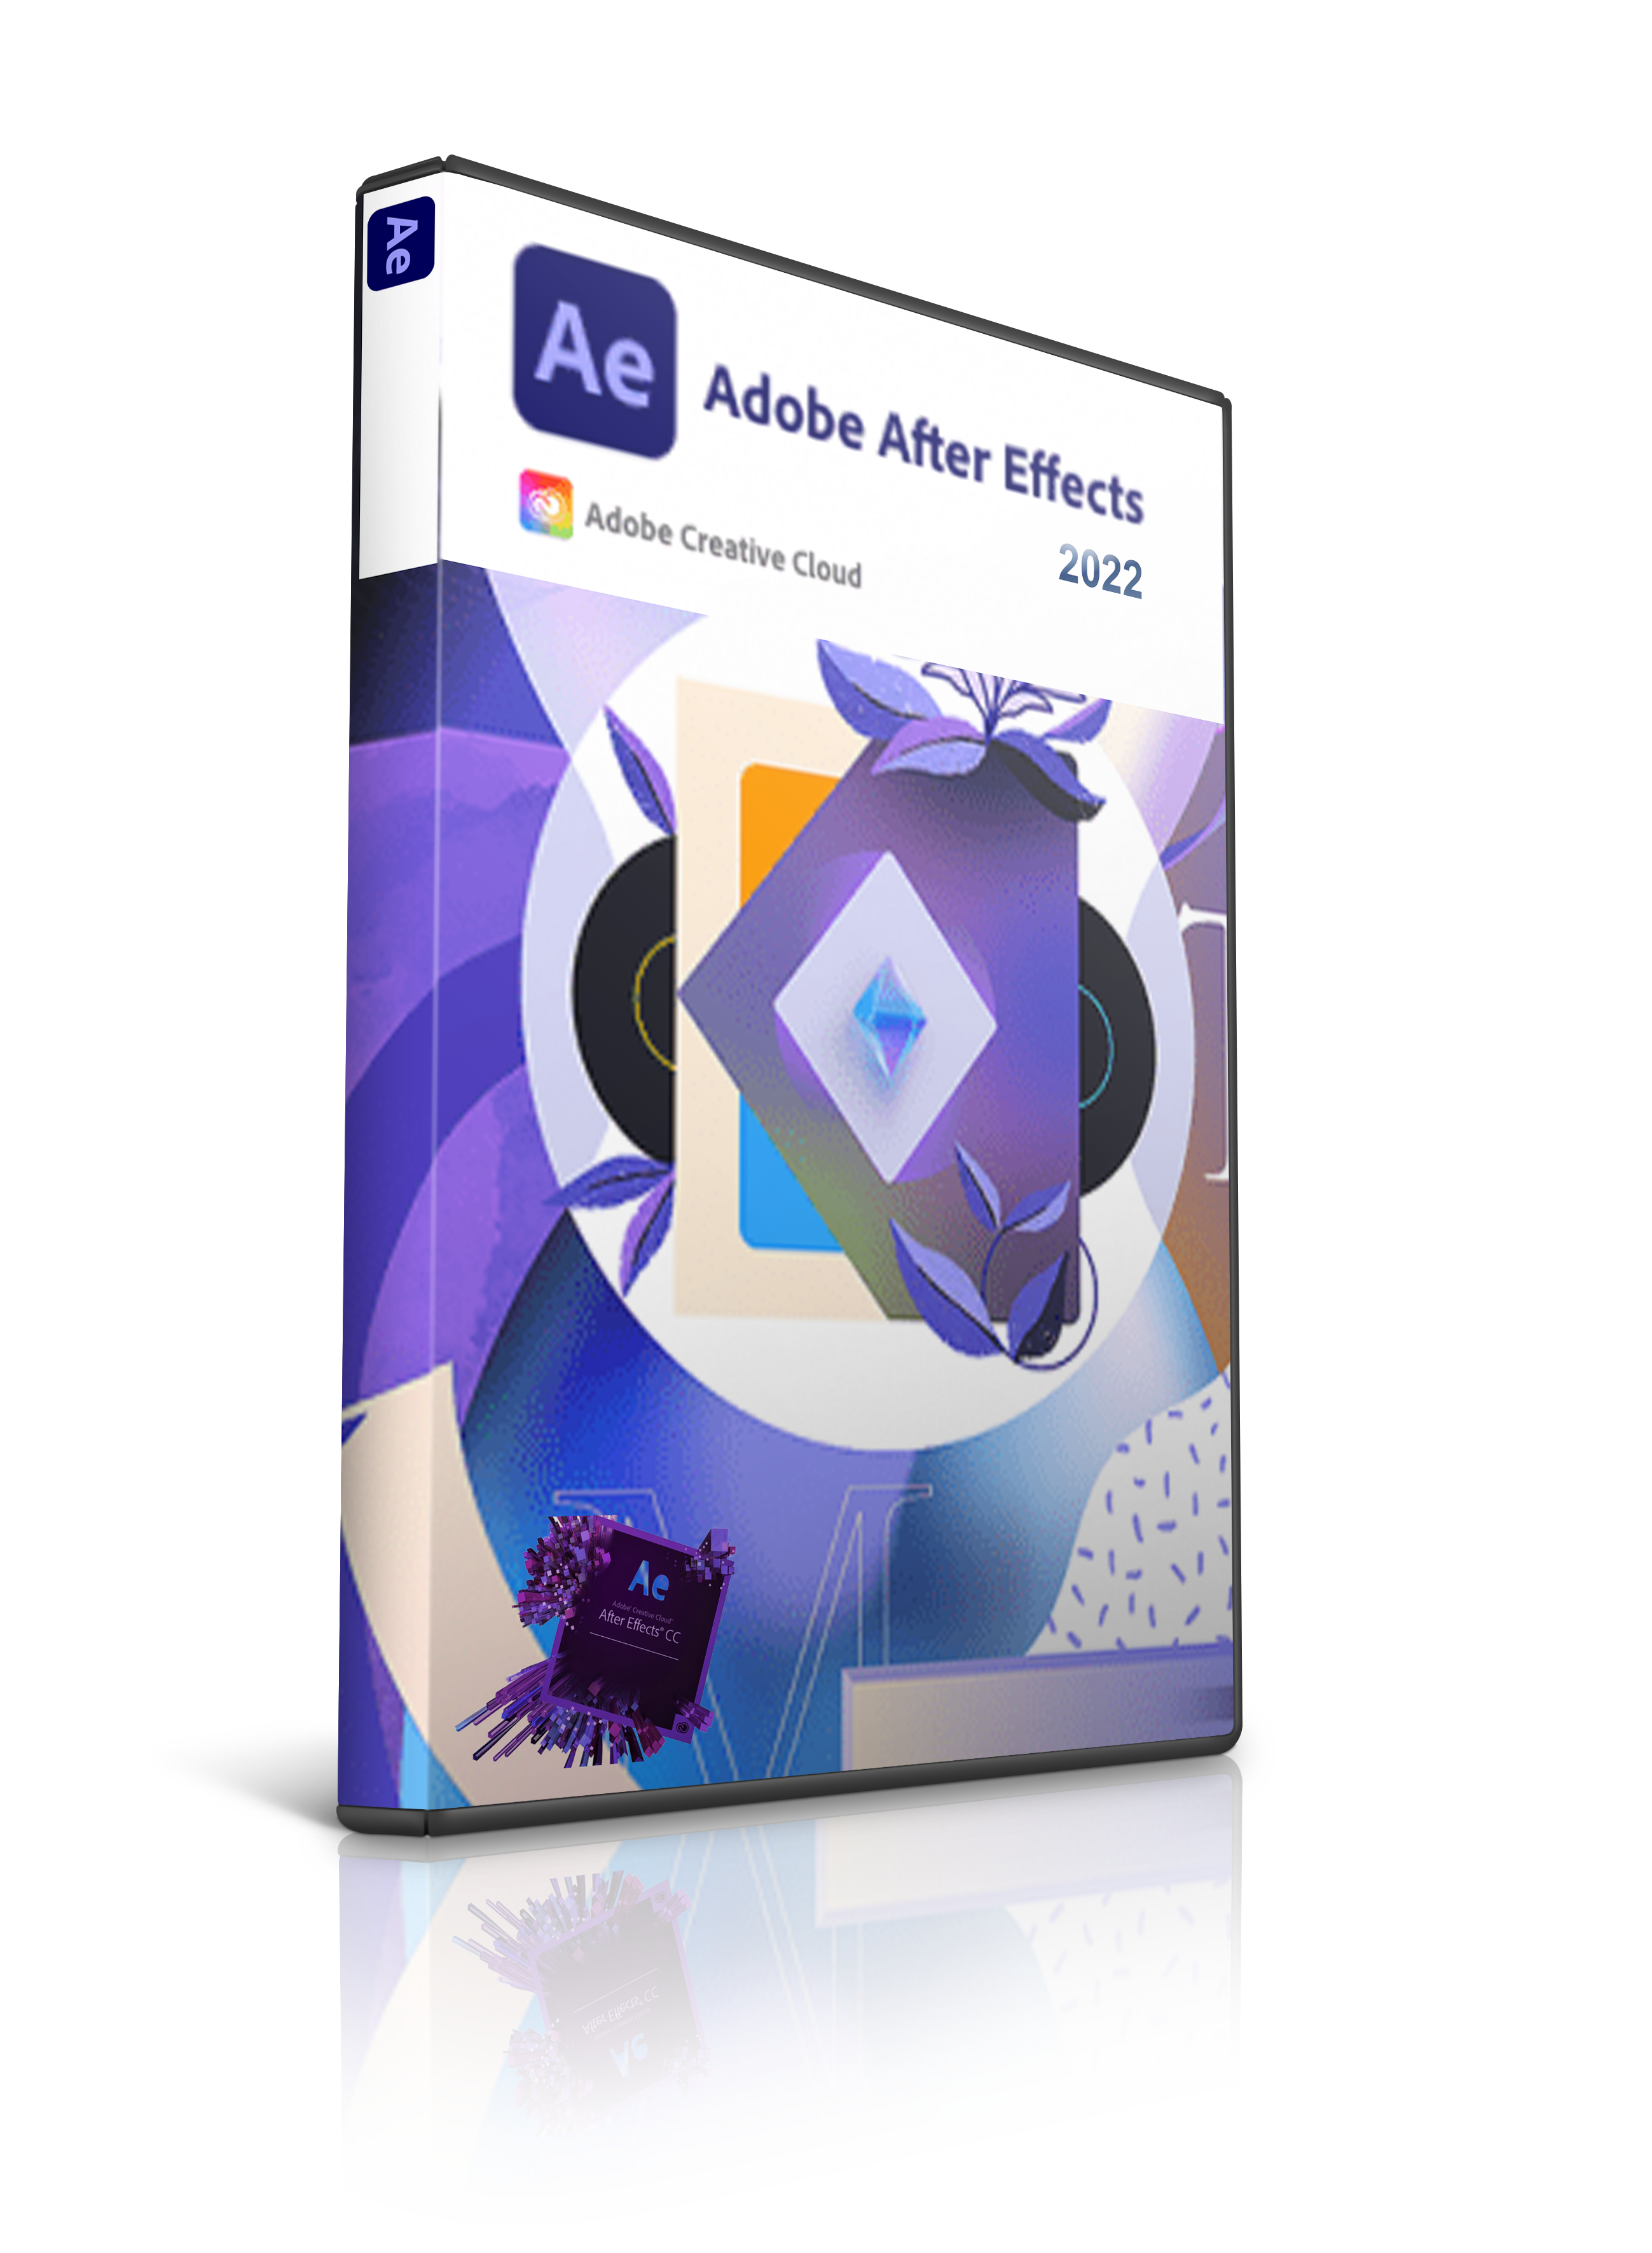 Adobe After Effects CC 2022 22.2 Активированная русская версия